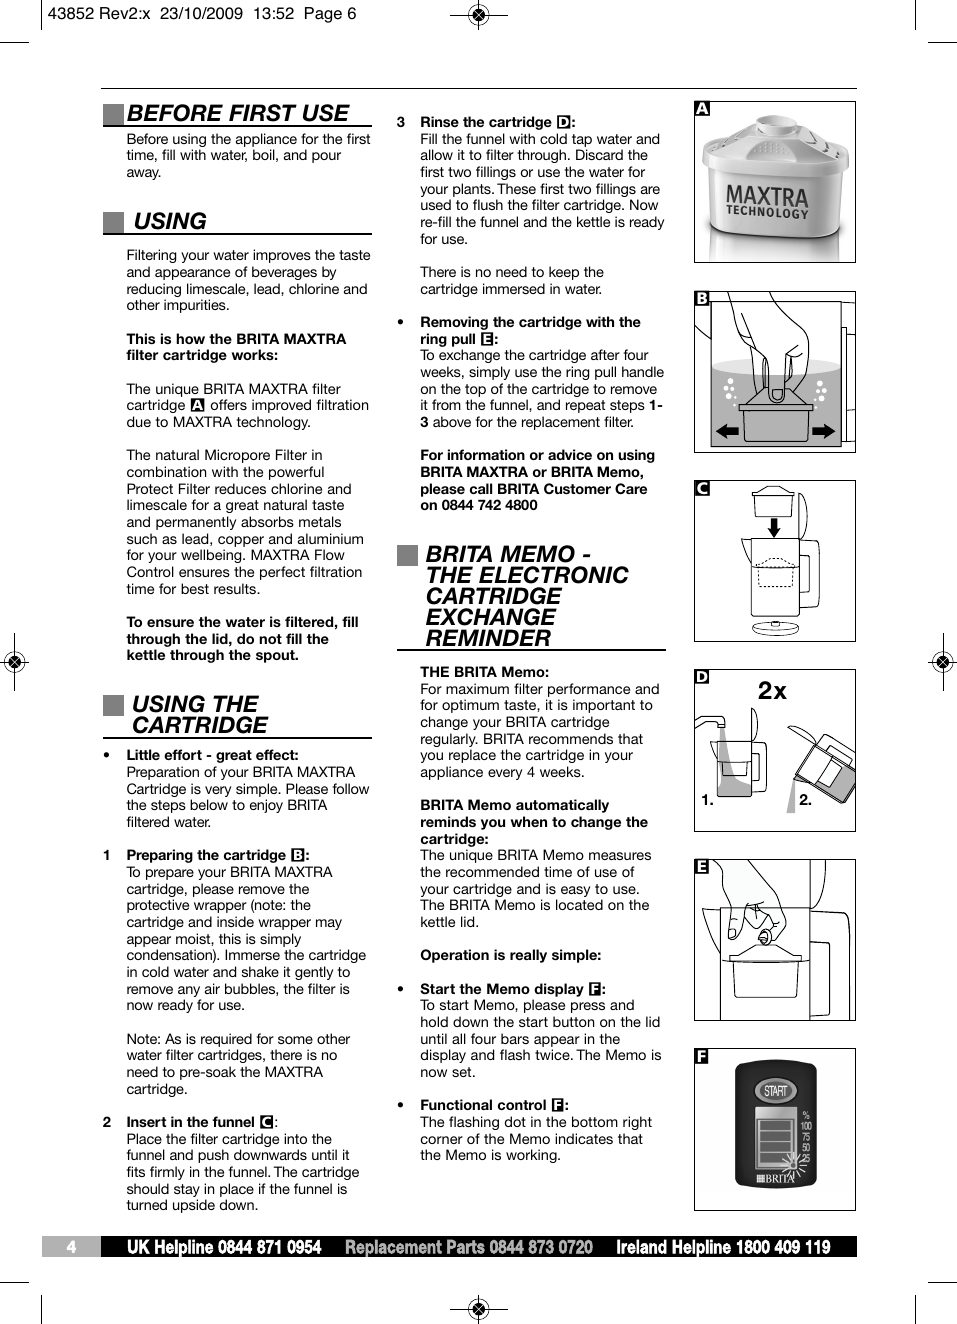 Page 6 of 6 - Brita Brita-Brita-Lp-Water-Dispenser-43852-Users-Manual- Logos6 Bw  Brita-brita-lp-water-dispenser-43852-users-manual